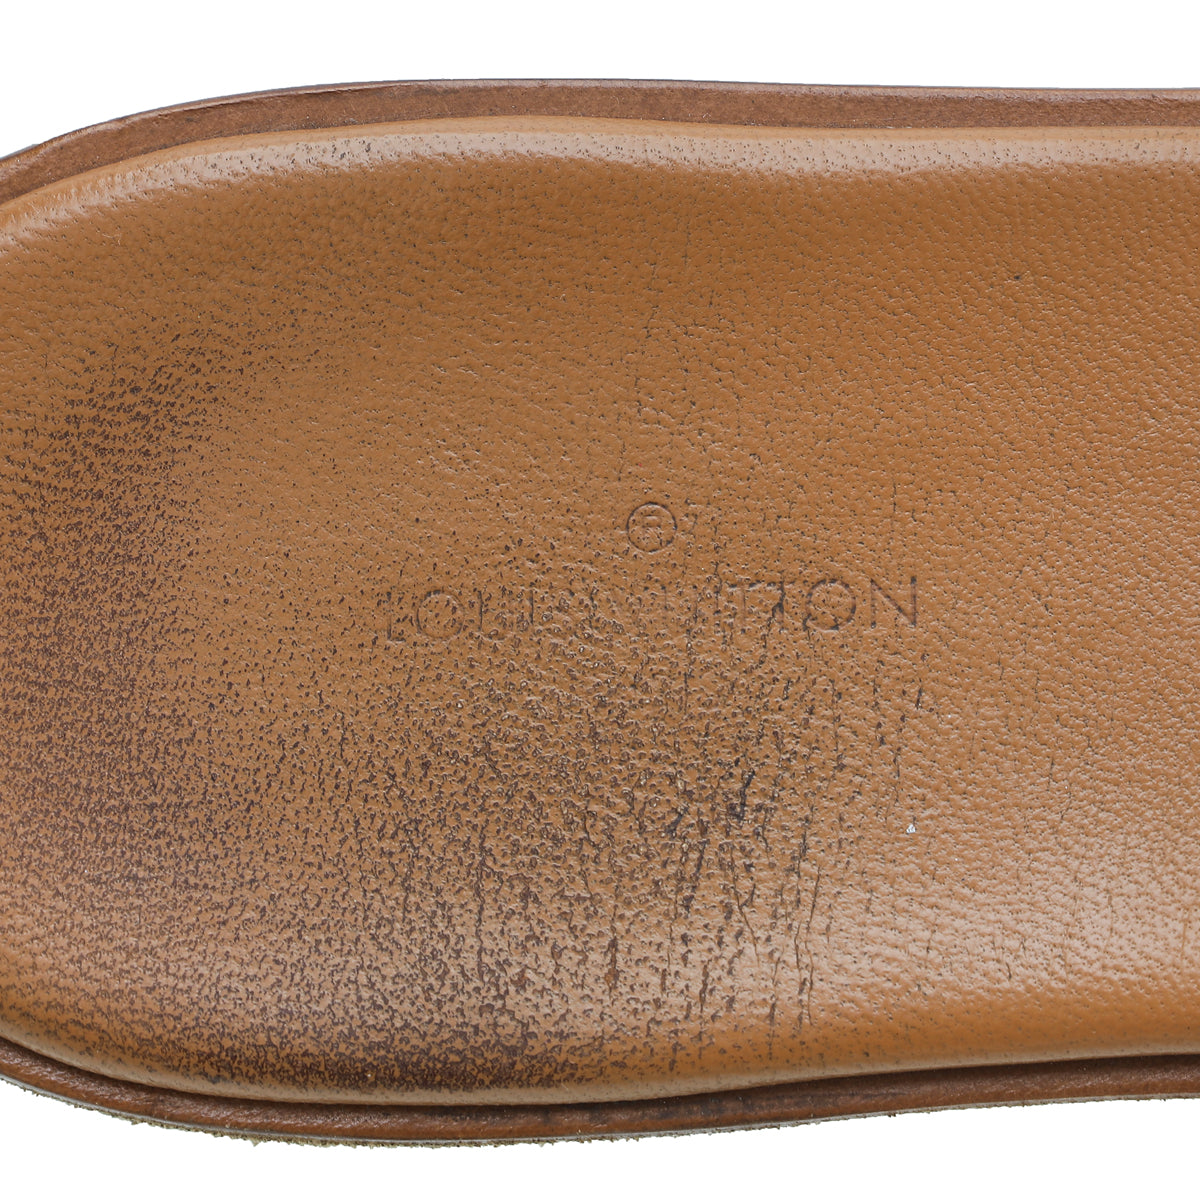 Louis Vuitton Bicolor Monogram Flat Sandals 37.5 – The Closet